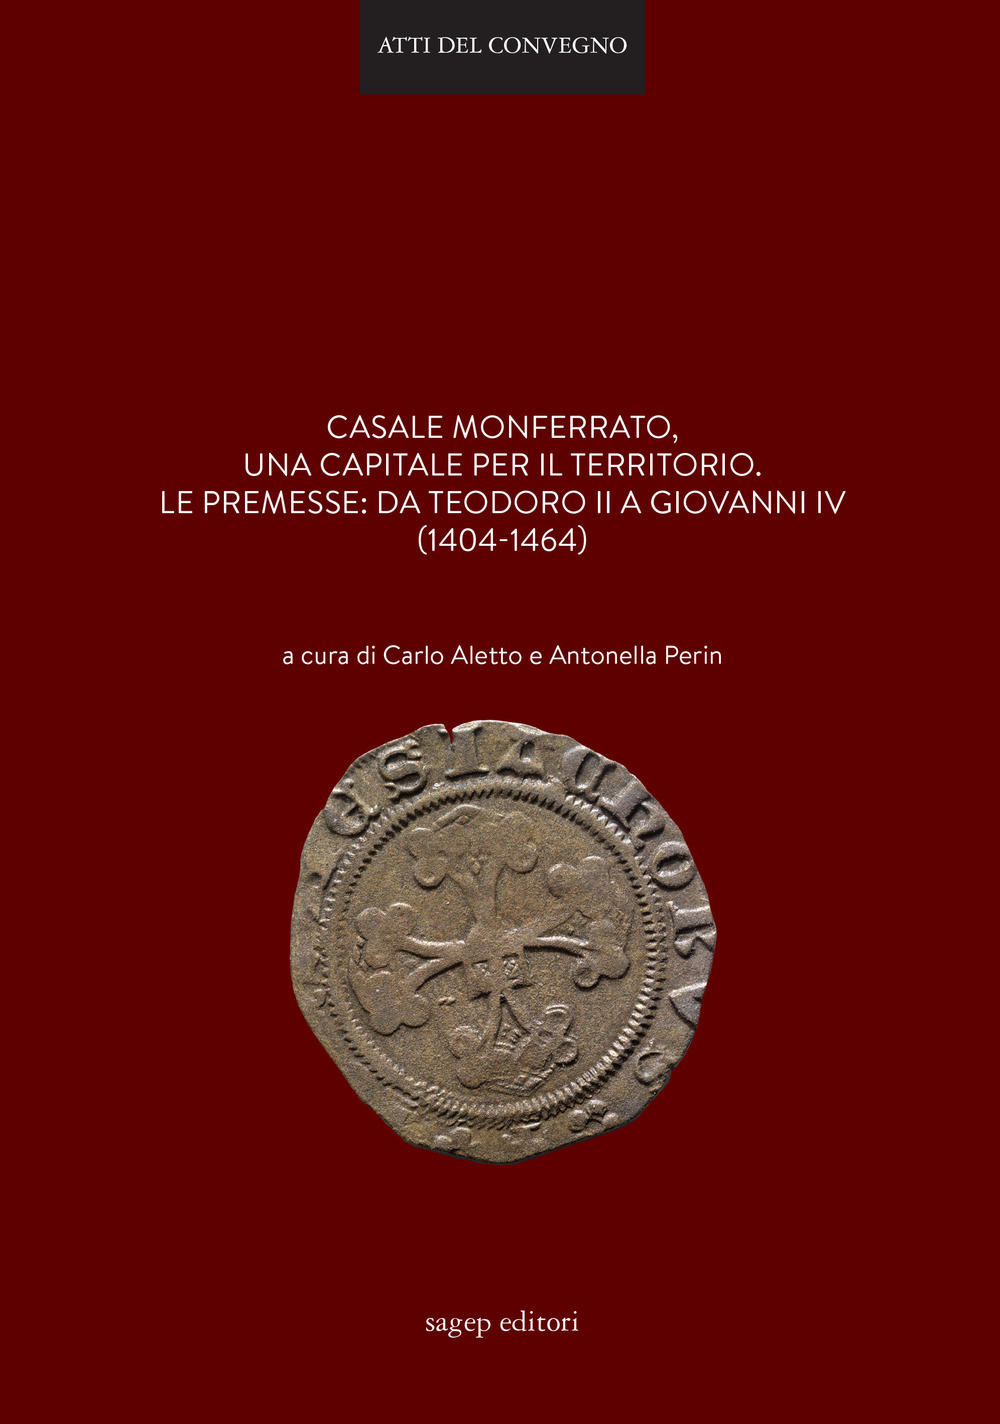 Casale Monferrato, una capitale per il territorio. Le premesse: da Teodoro II a Giovanni IV (1404-1464)